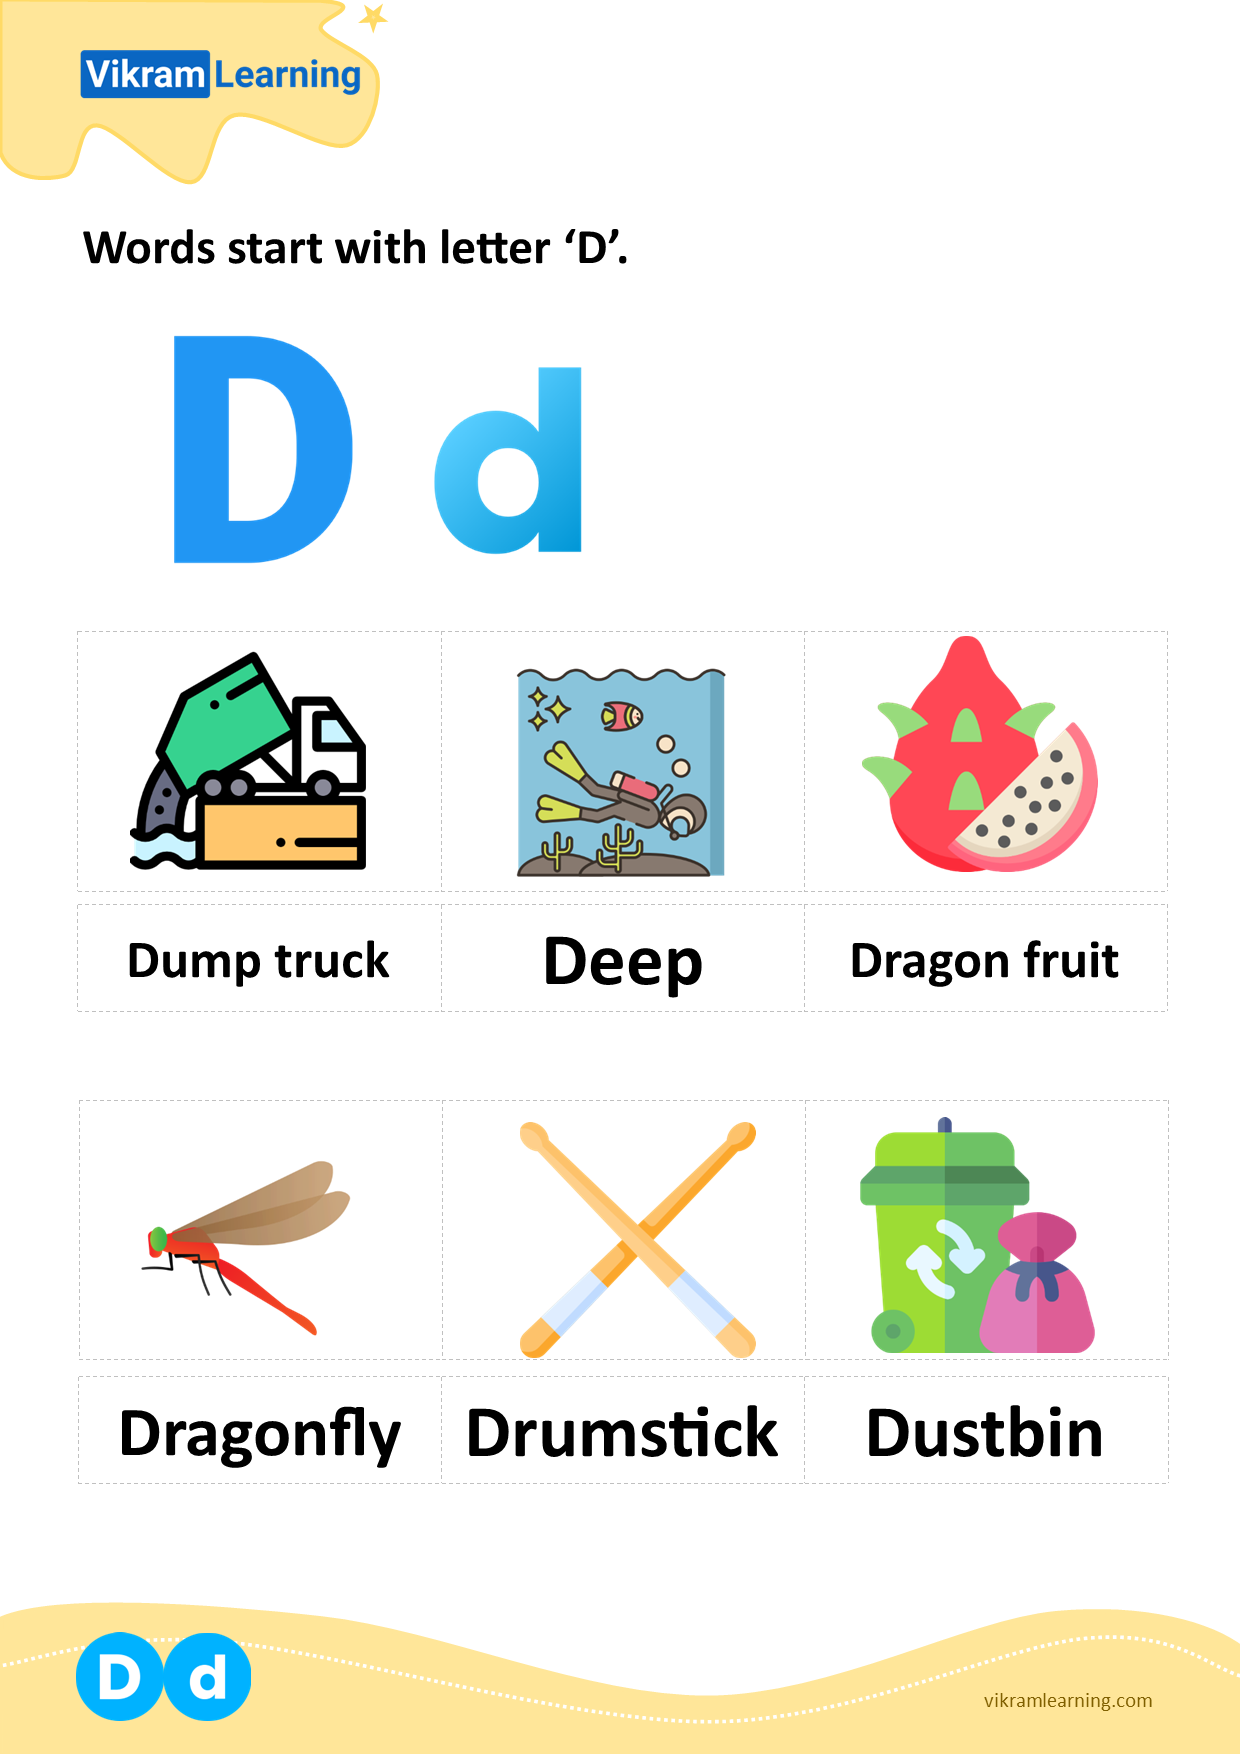 Download words start with letter 'd' worksheets | vikramlearning.com